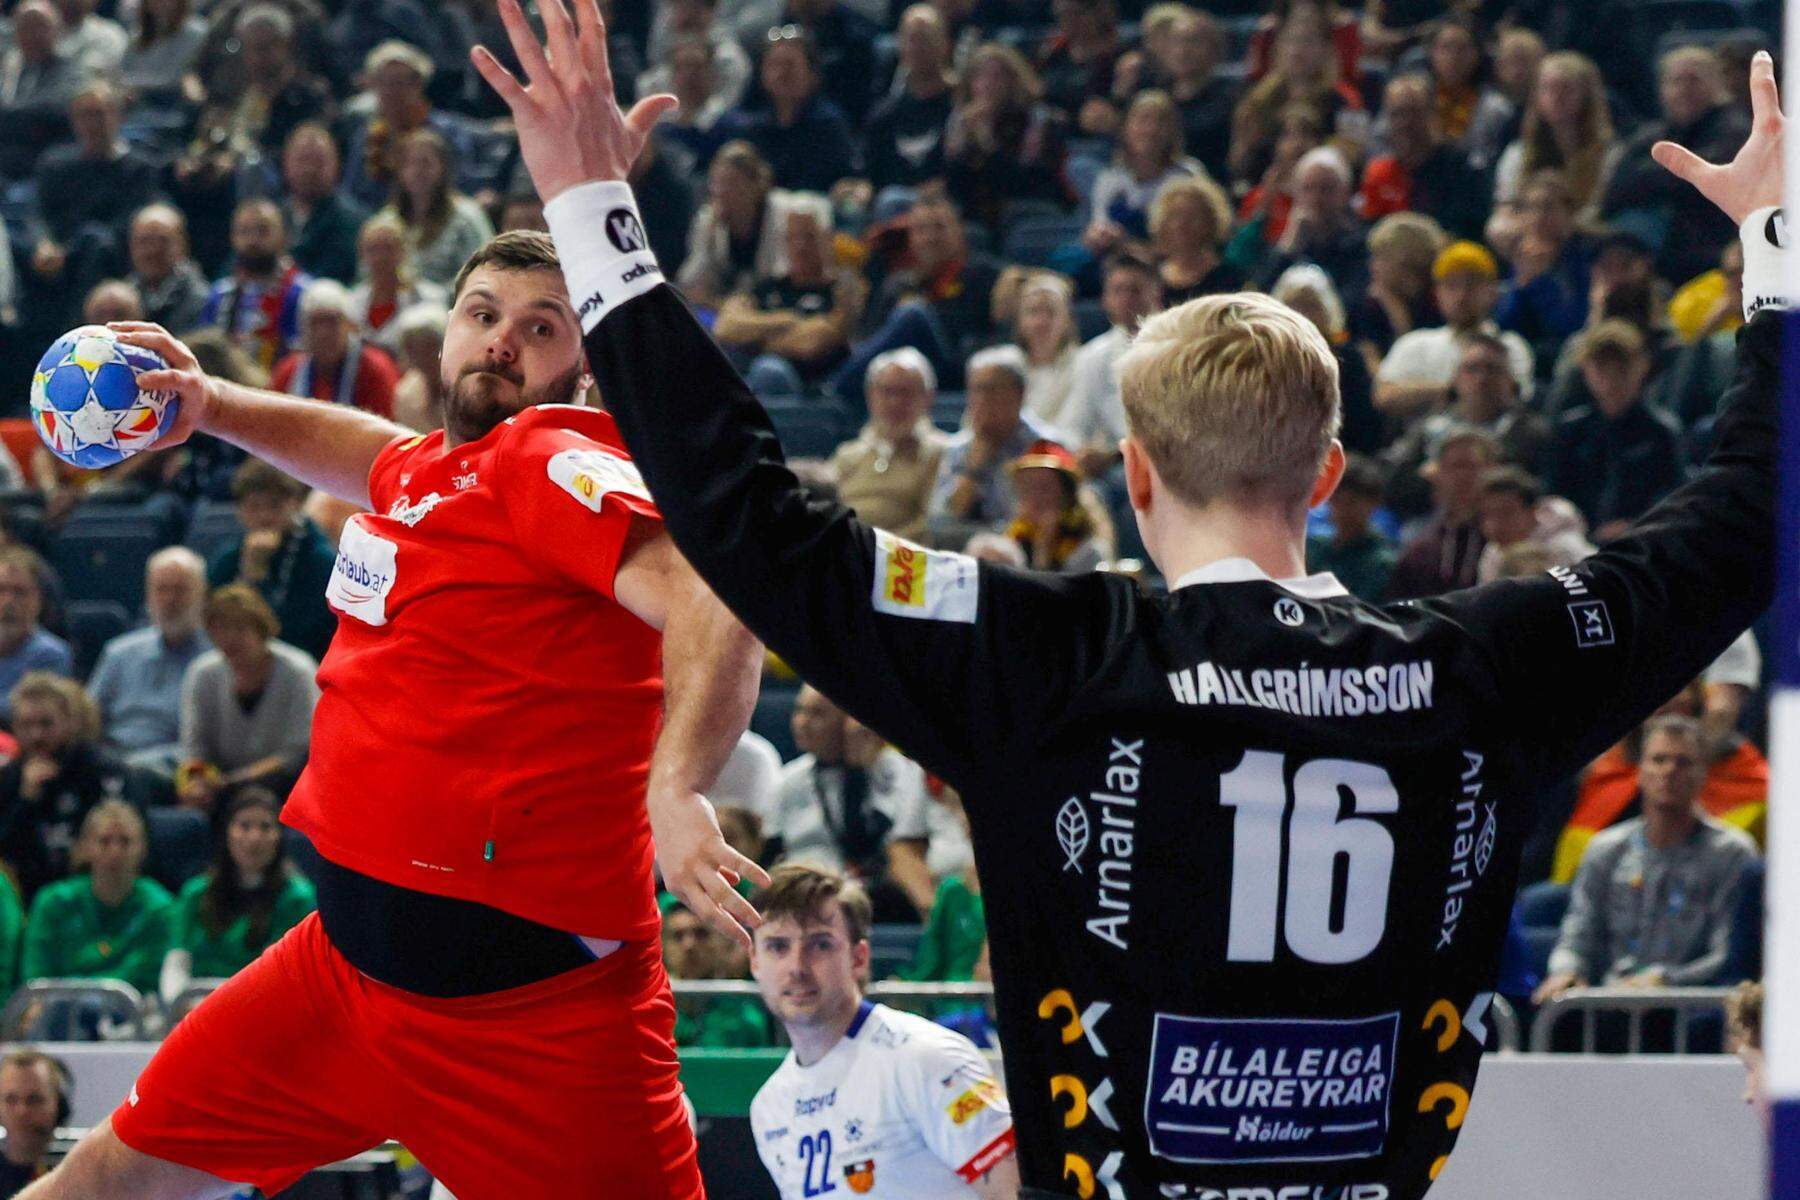 Handball-EM | Tobias Wagner kritisiert deutsche Fans für Pfiffe: „Hatten gegen uns mehr Glück als Verstand“